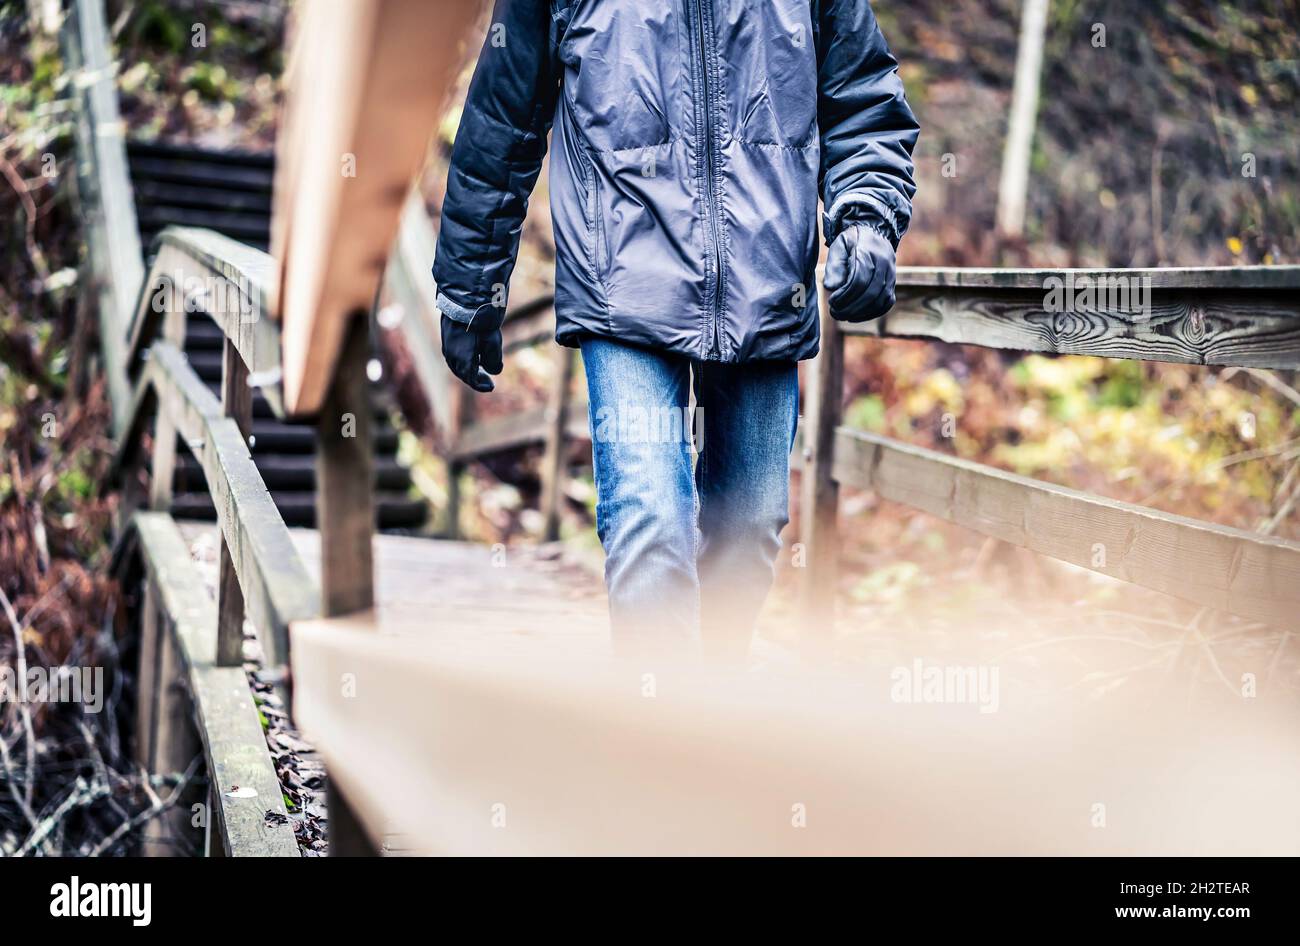 Autunno, inverno, o caduta a piedi nella foresta. Uomo su un sentiero di legno, sentiero o ponte. Happy hiker con giacca e jeans godendo di divertimento all'aperto. Foto Stock